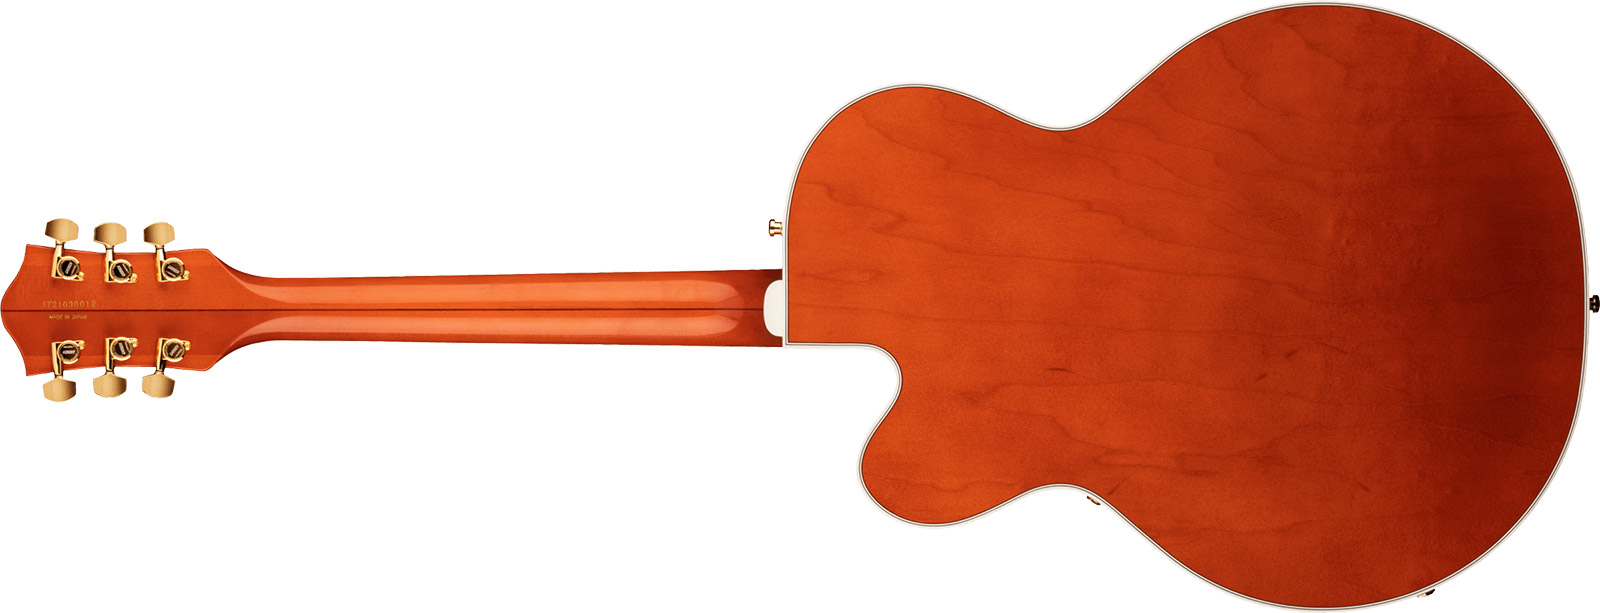 Gretsch G6120tg Players Edition Nashville Pro Jap Bigsby Eb - Orange Stain - Hollow bodytock elektrische gitaar - Variation 1